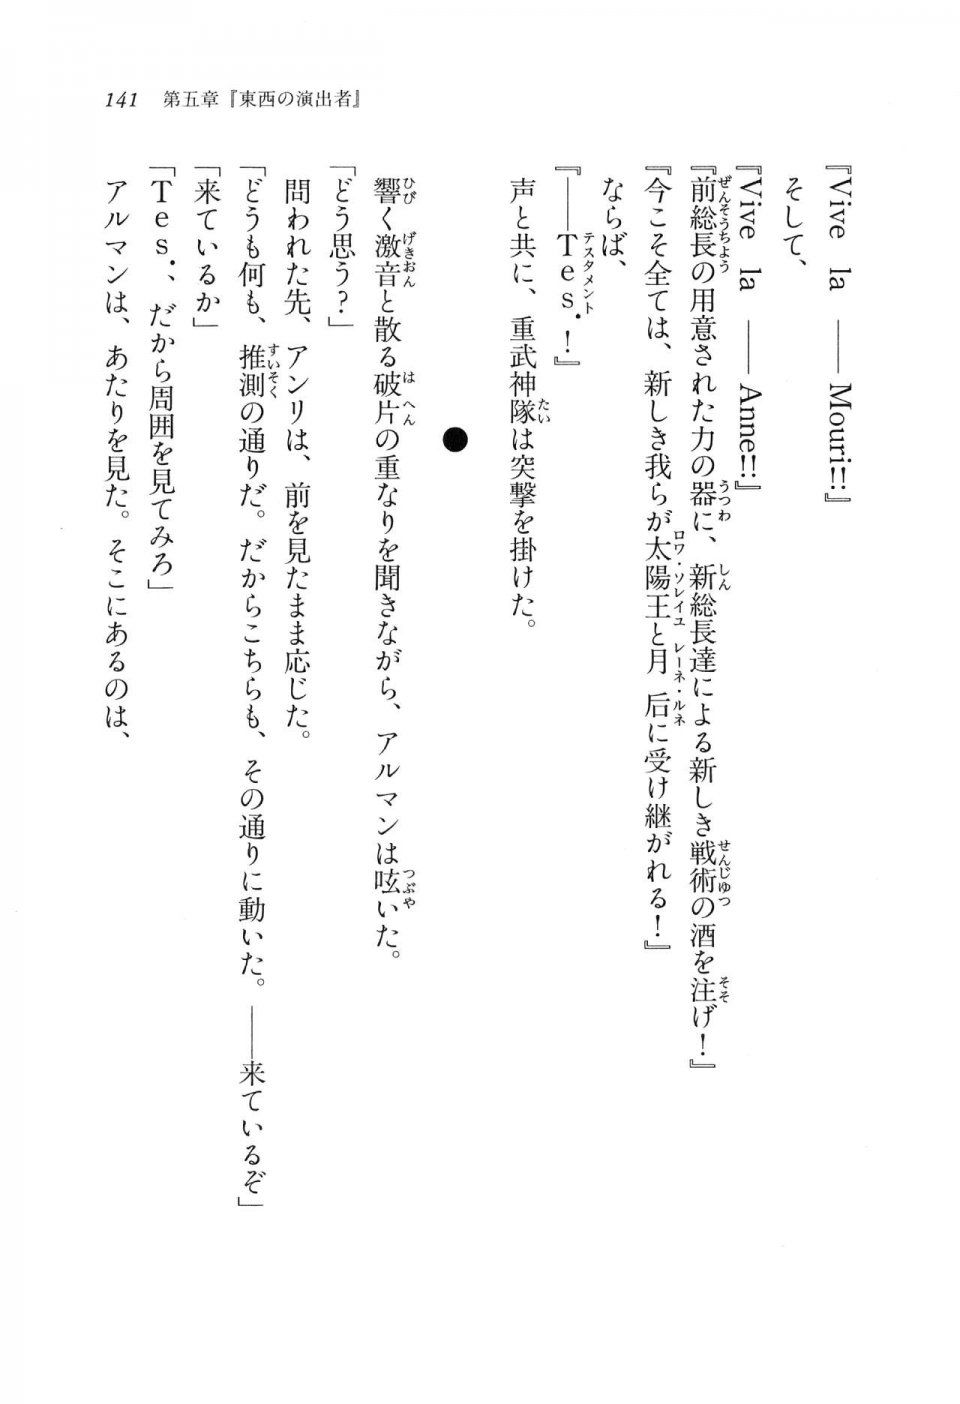 Kyoukai Senjou no Horizon LN Vol 11(5A) - Photo #141